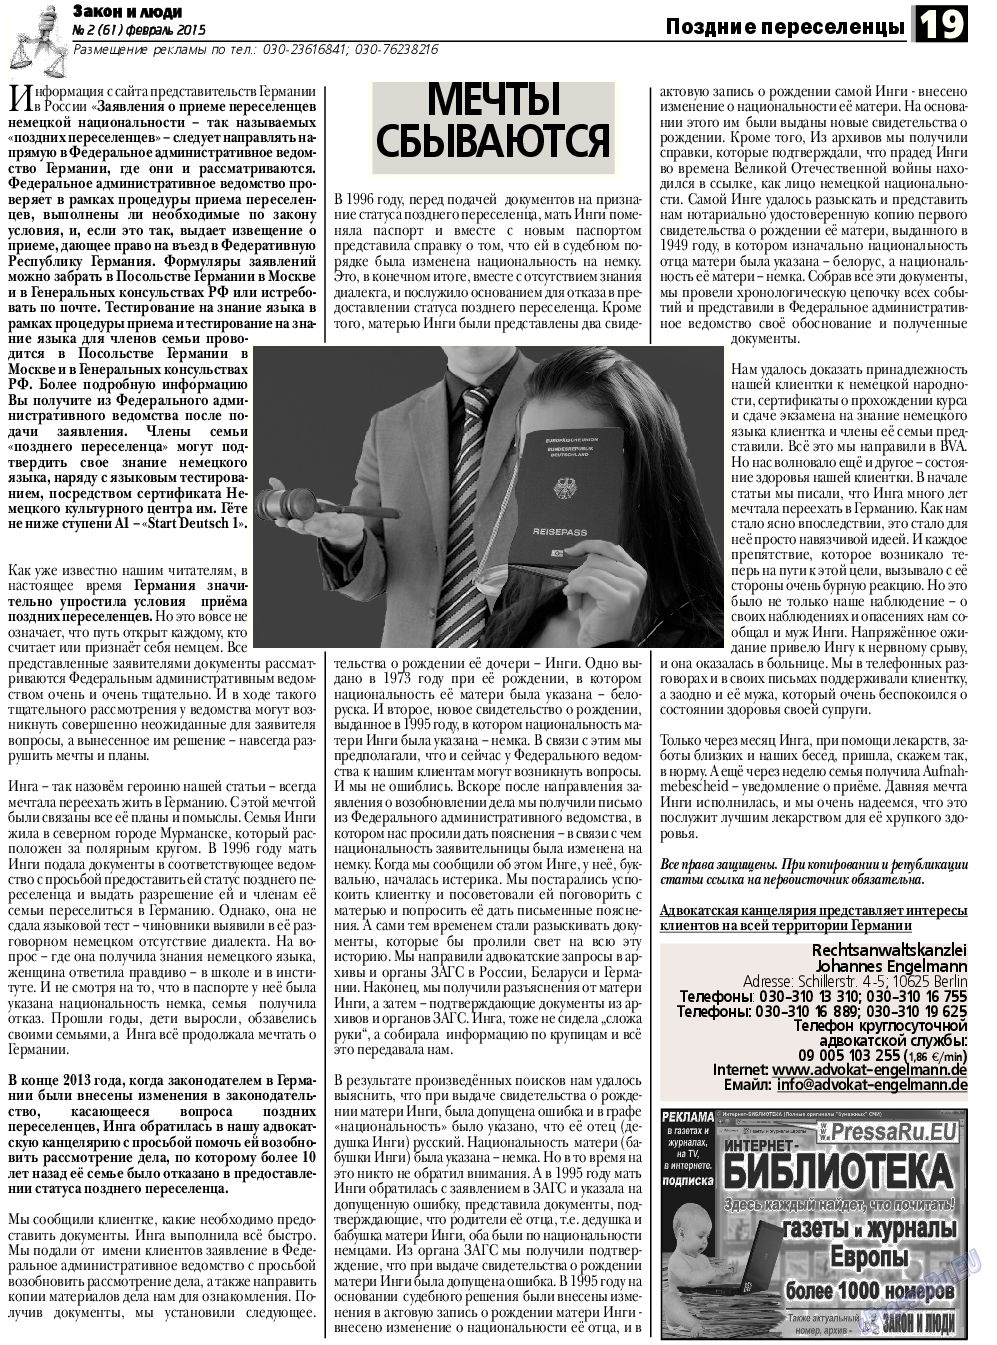 Закон и люди, газета. 2015 №2 стр.19